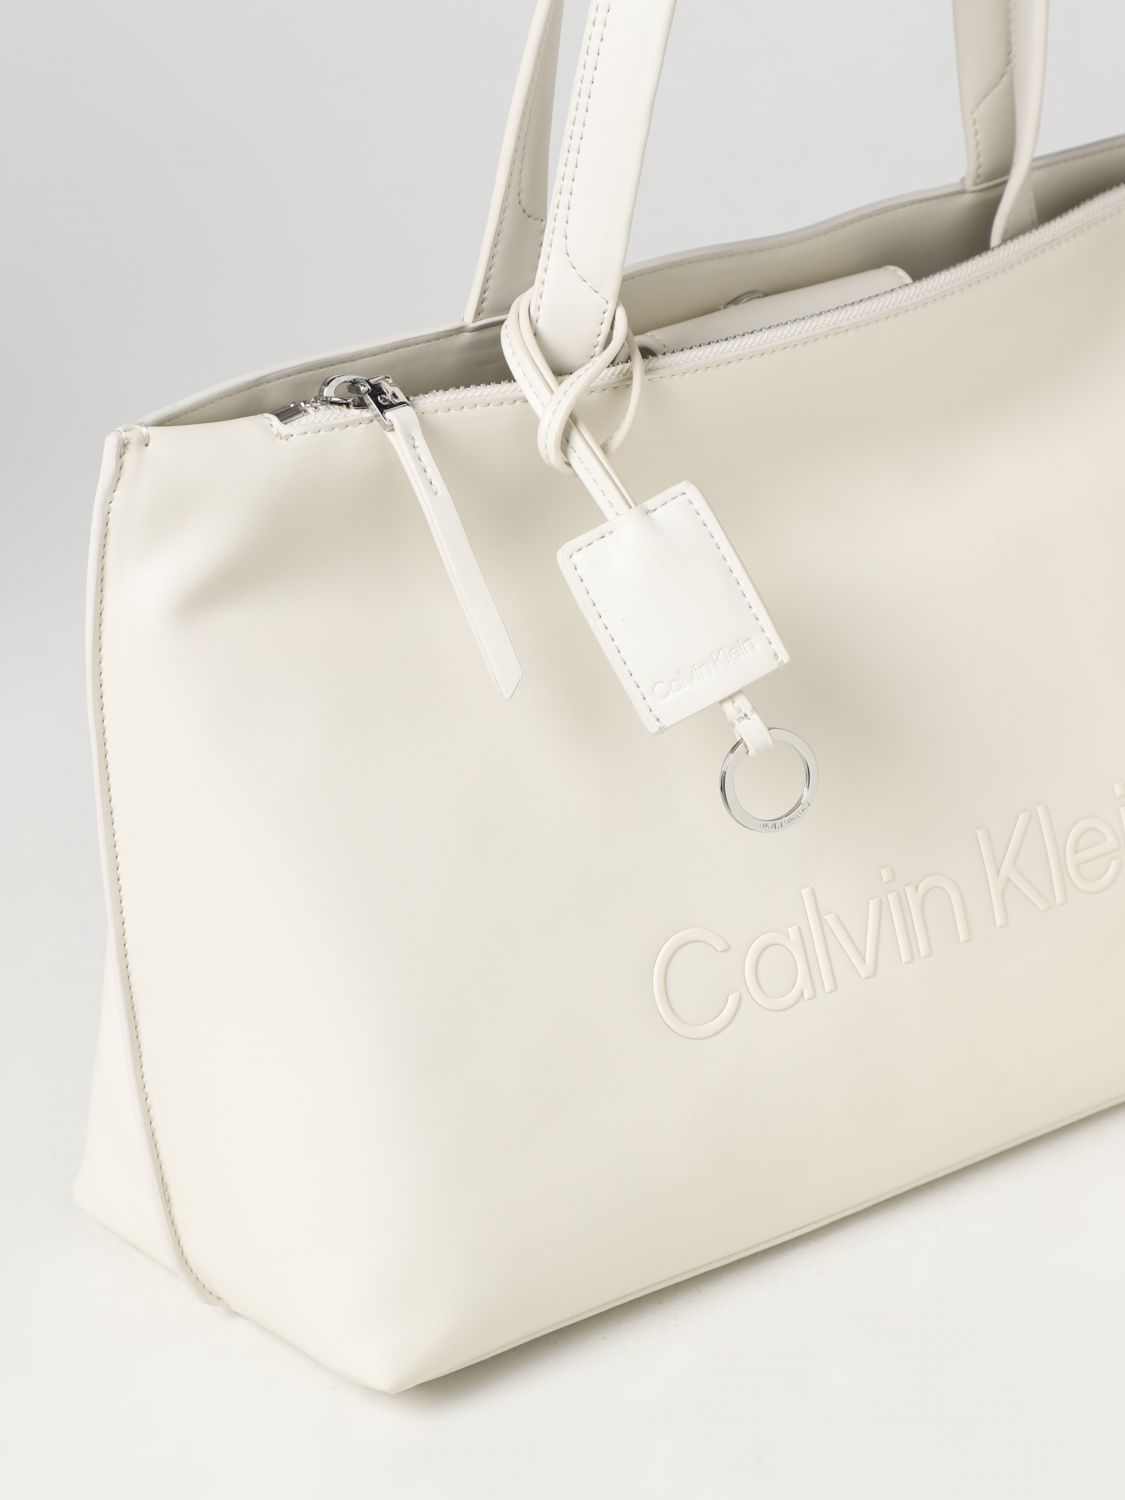 CALVIN KLEIN K60K610628 - Tote bag